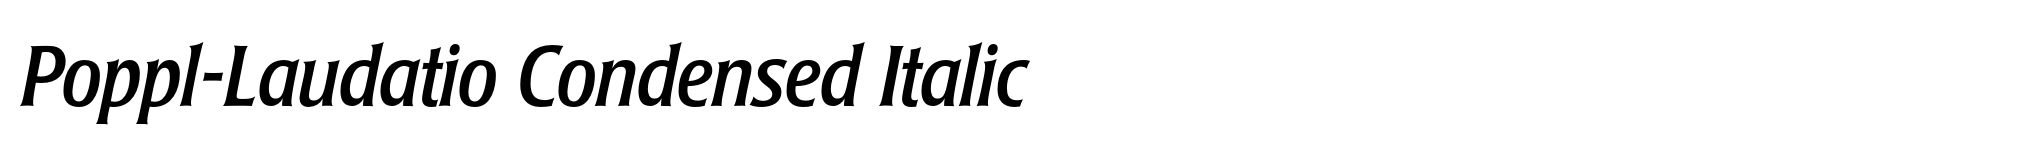 Poppl-Laudatio Condensed Italic image